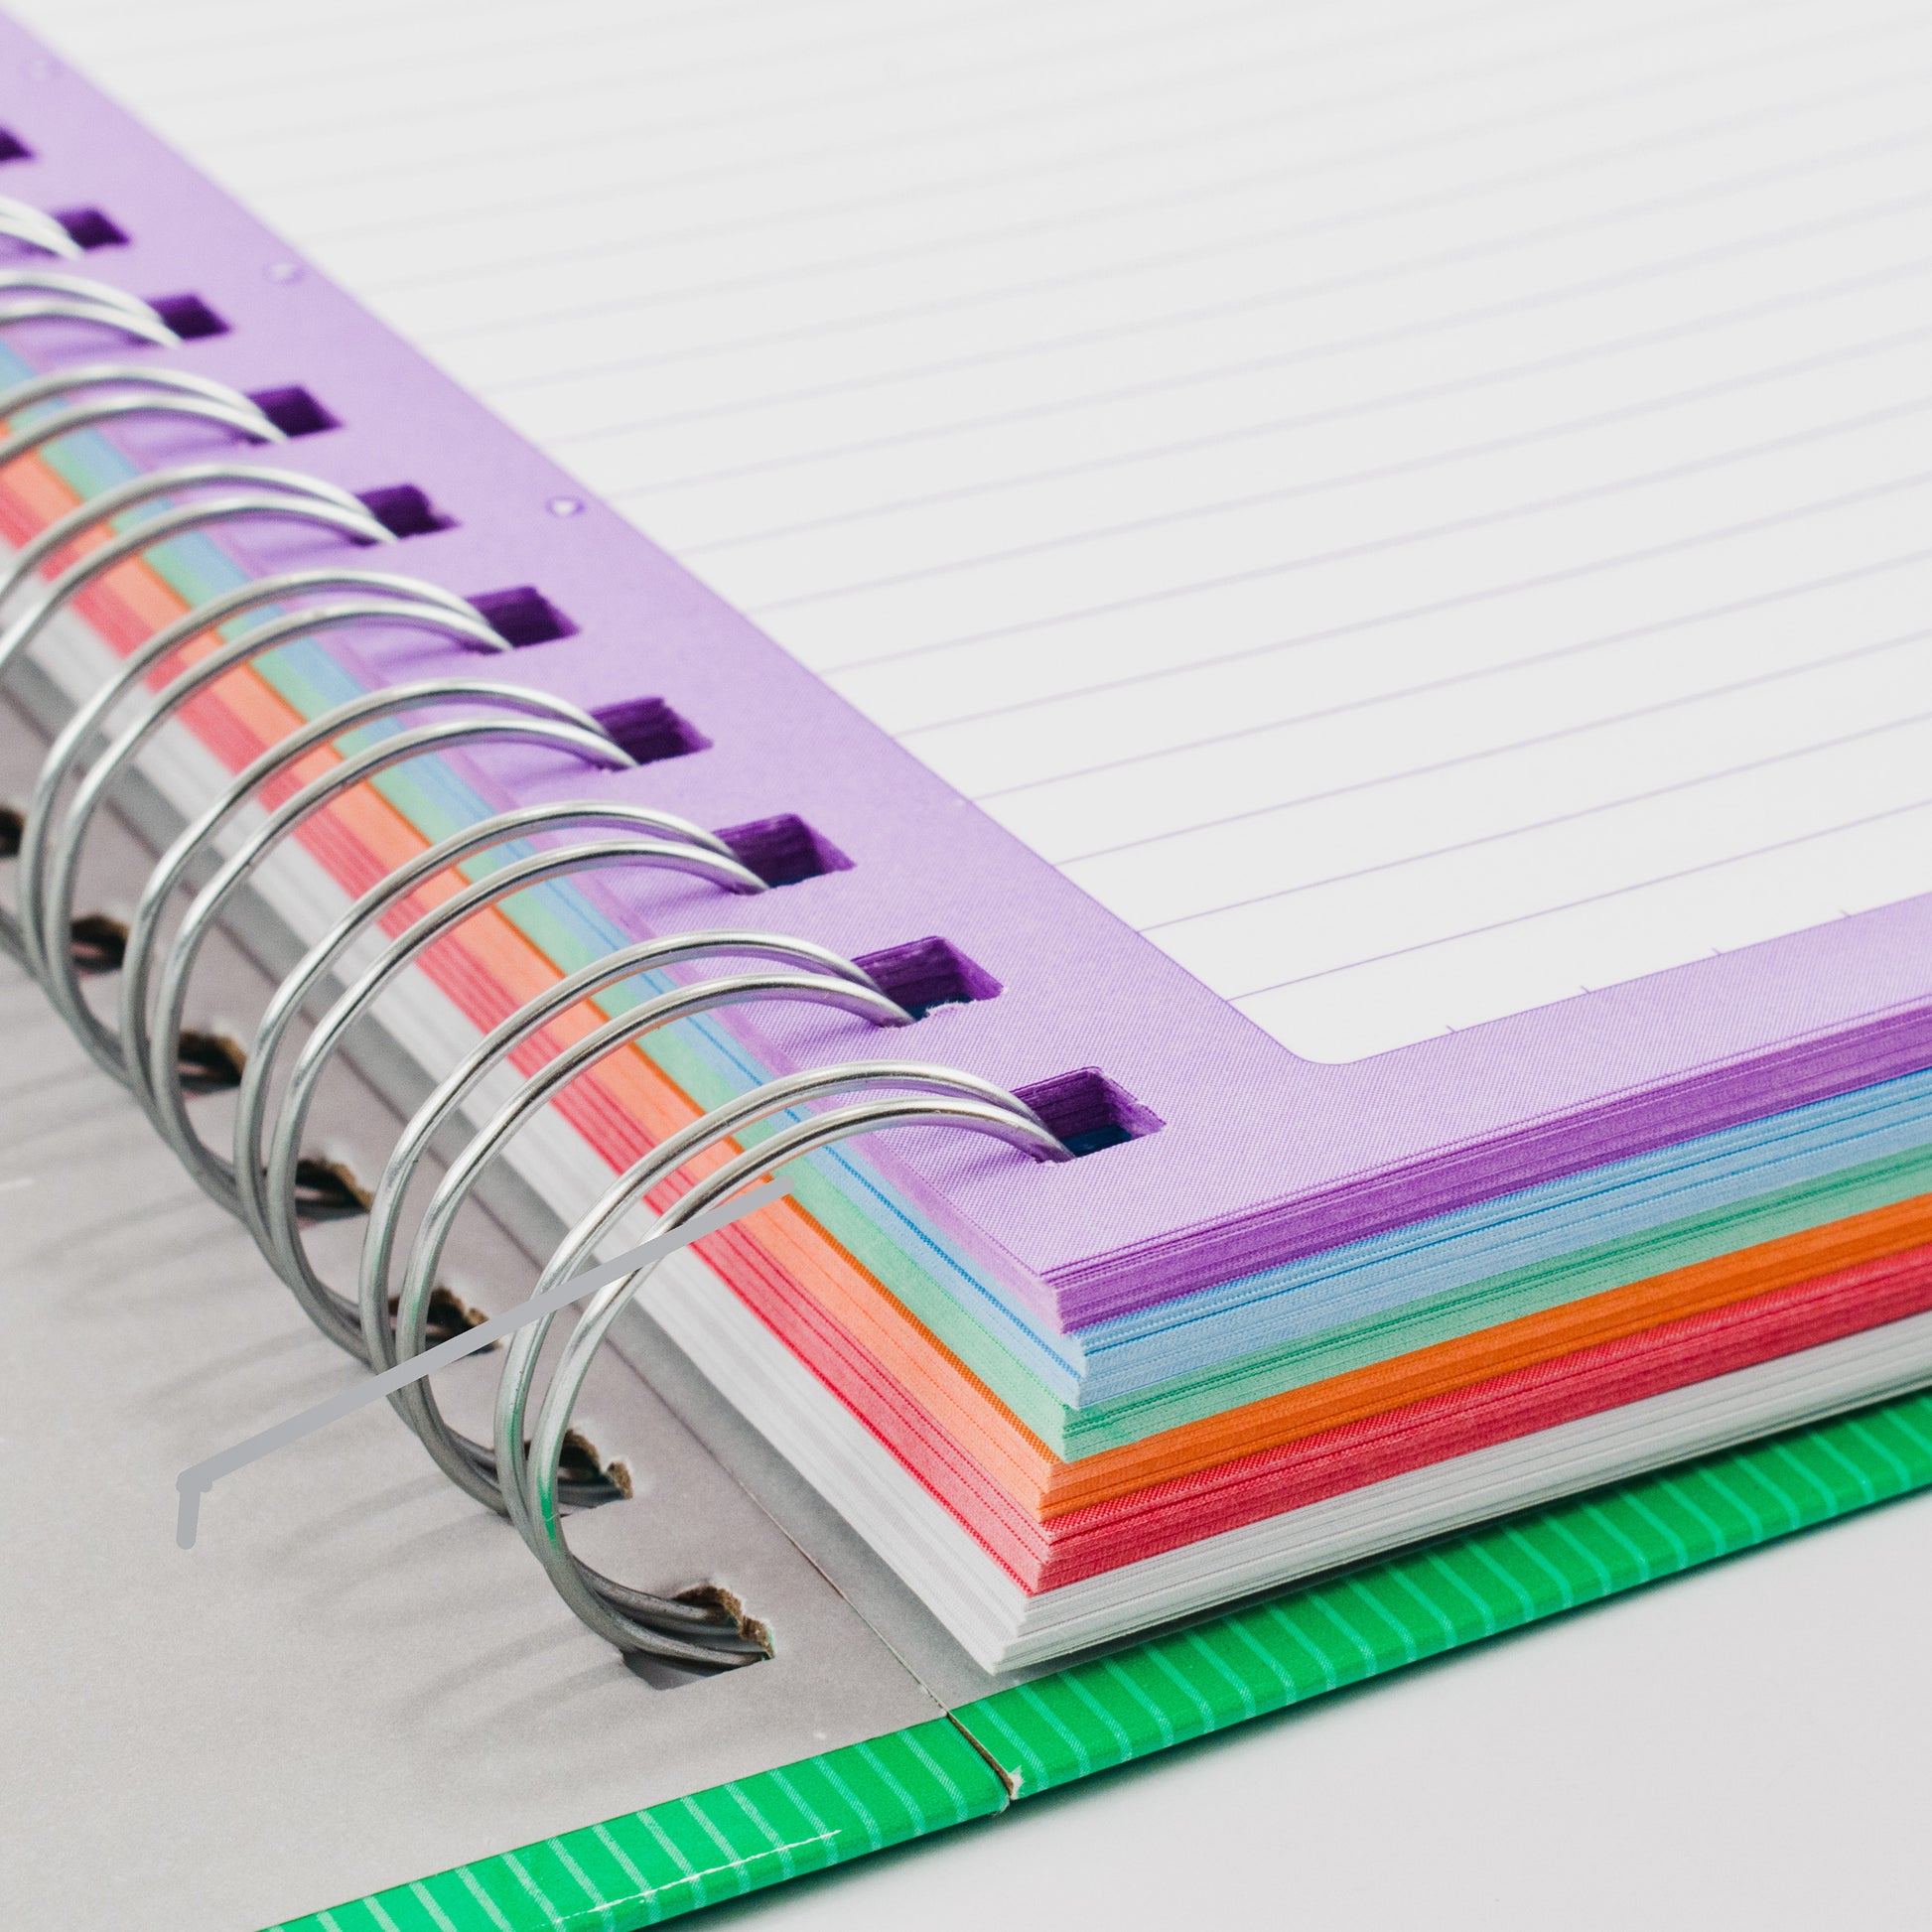 Cuaderno personalizado pasta dura opción 1 – 21x15cm – Tienda Virtual –  BRULER